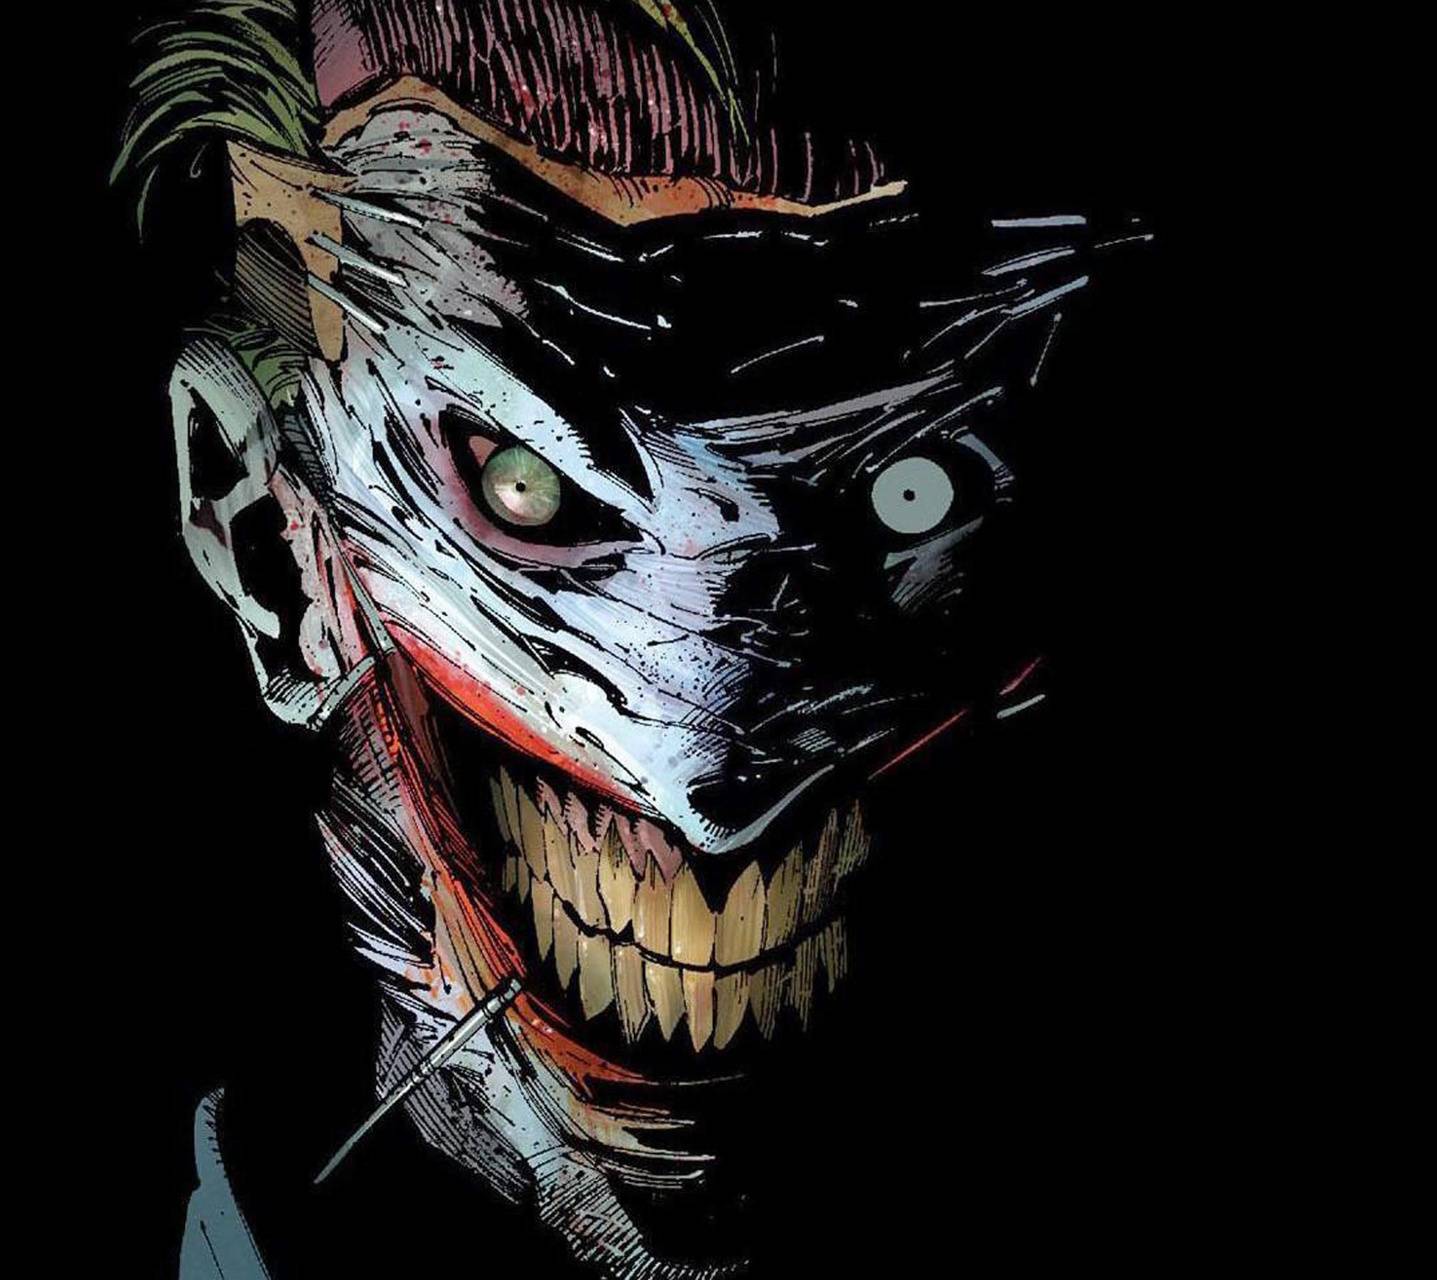 Joker New 52 Wallpapers - Top Free Joker New 52 Backgrounds -  WallpaperAccess